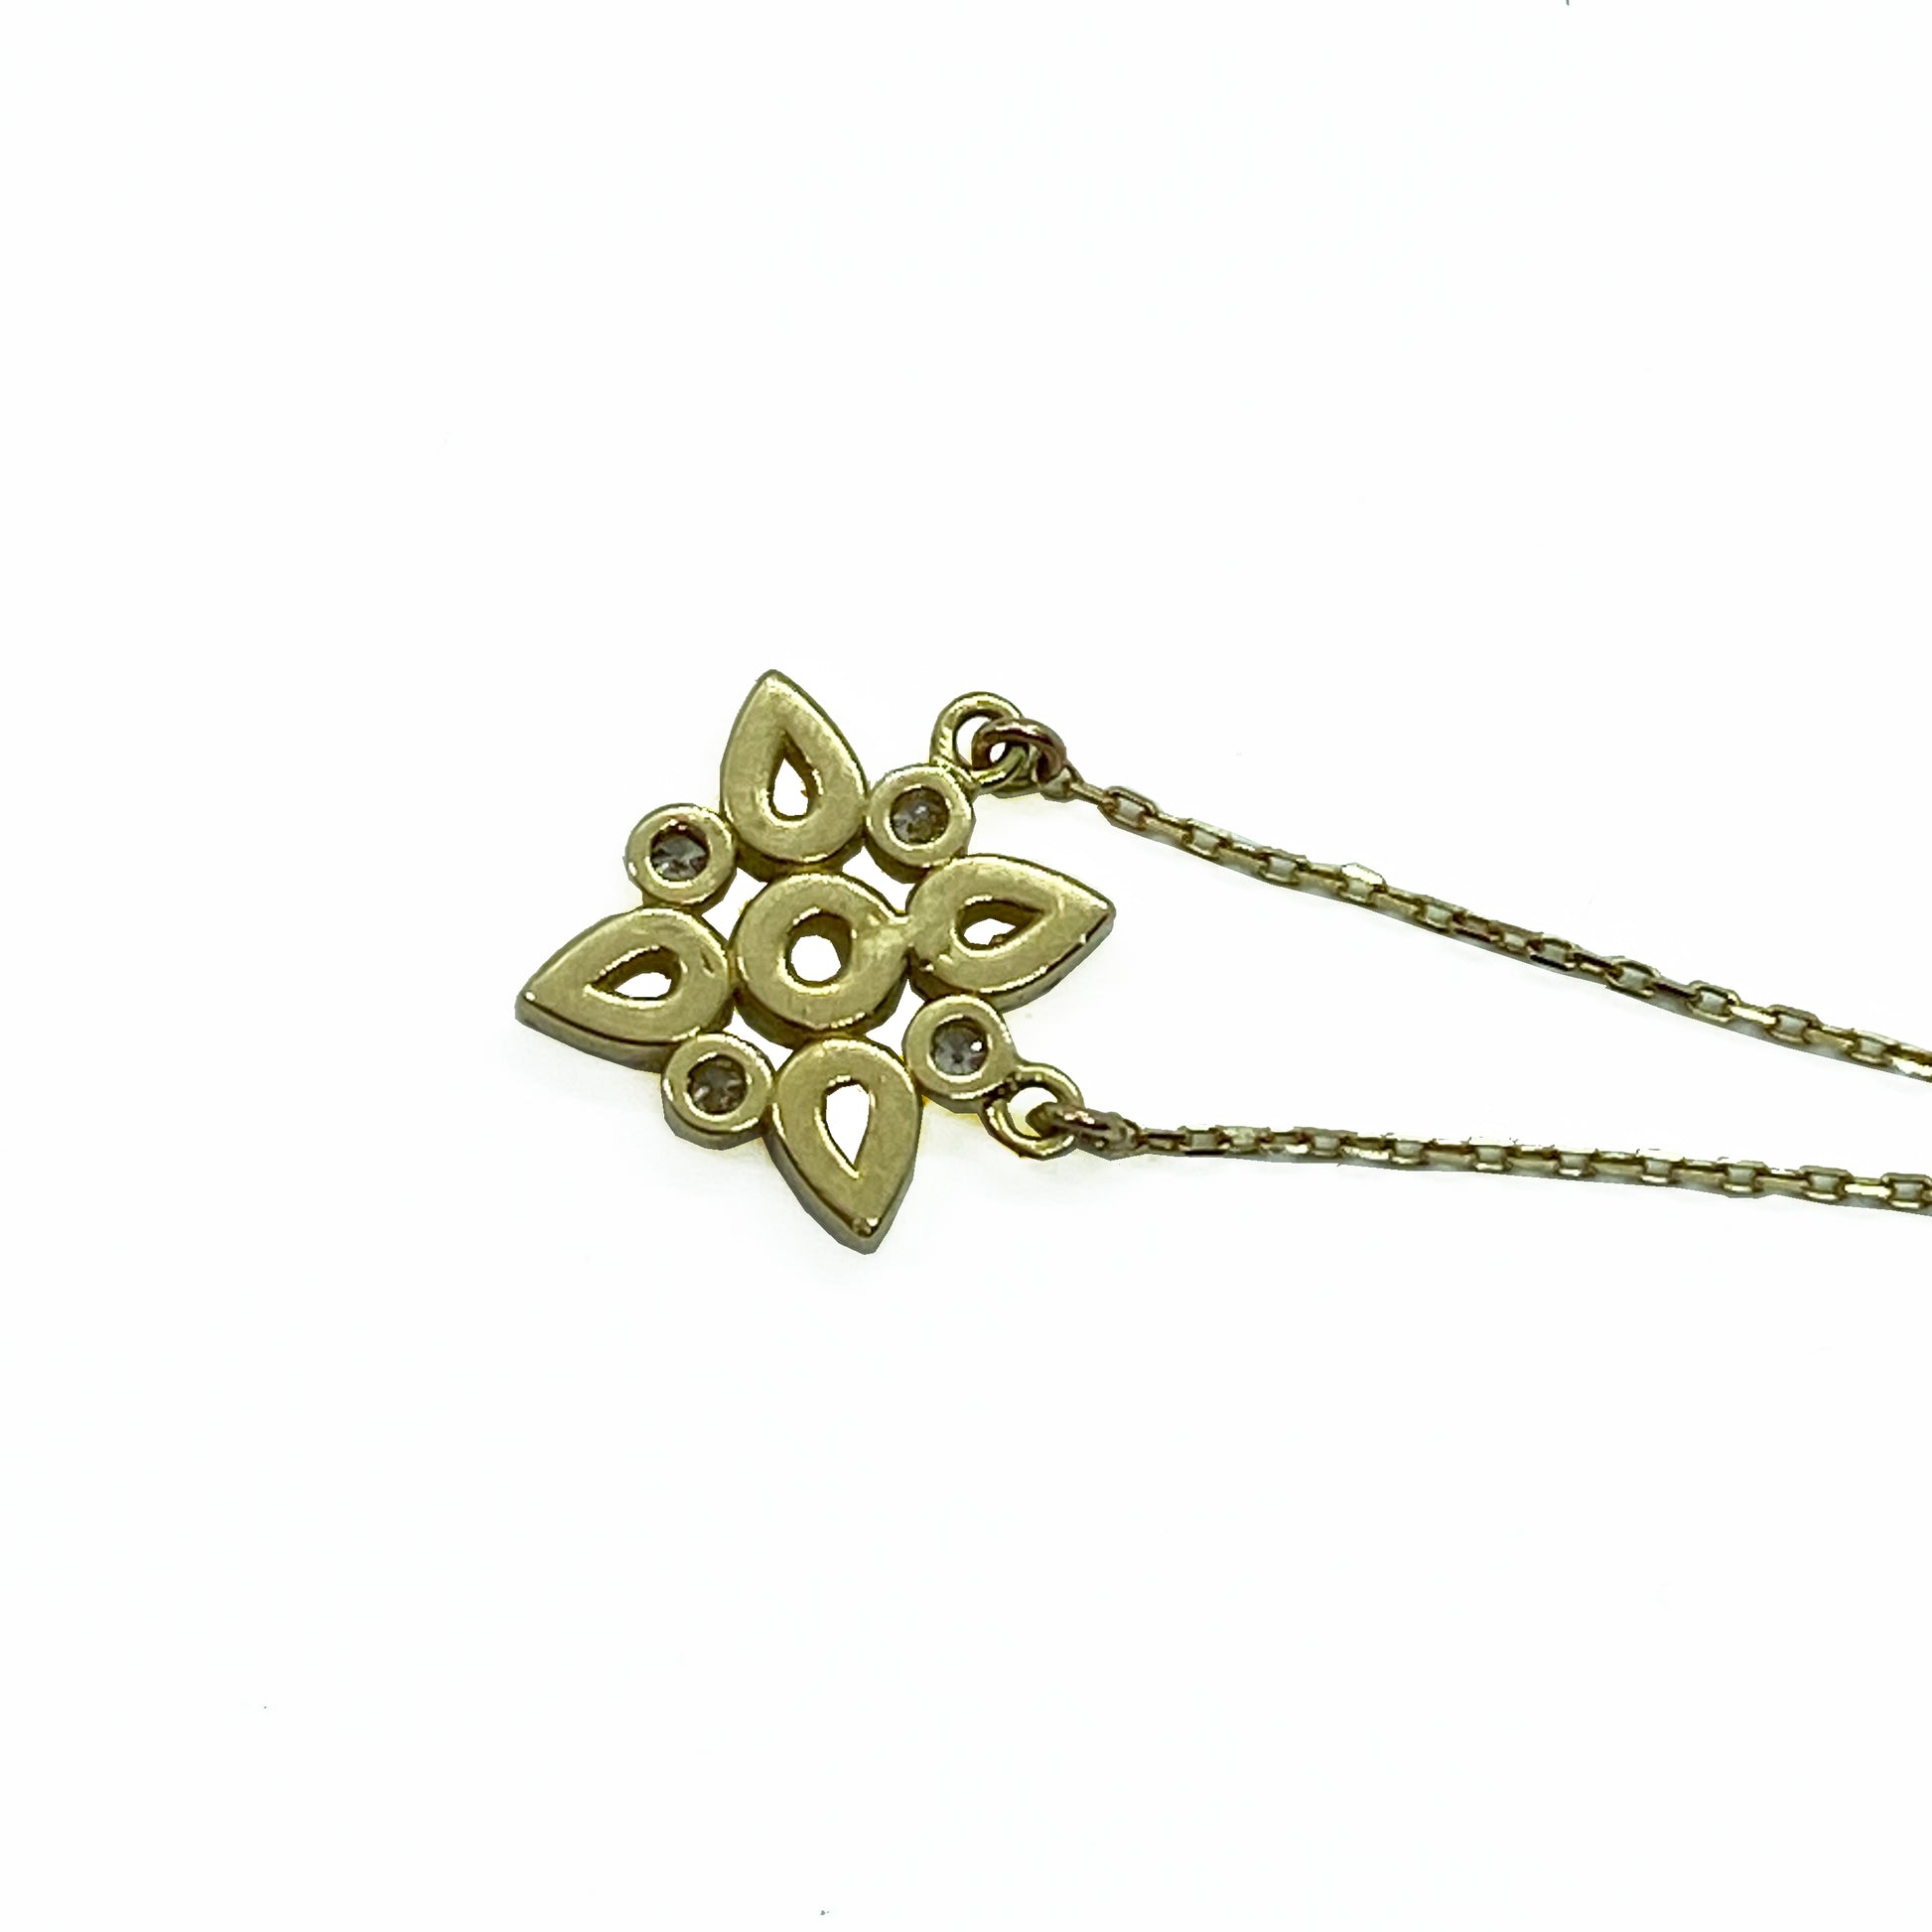 18ky Diamond Flower Necklace by Ferro & Fiori - eklektic jewelry studio